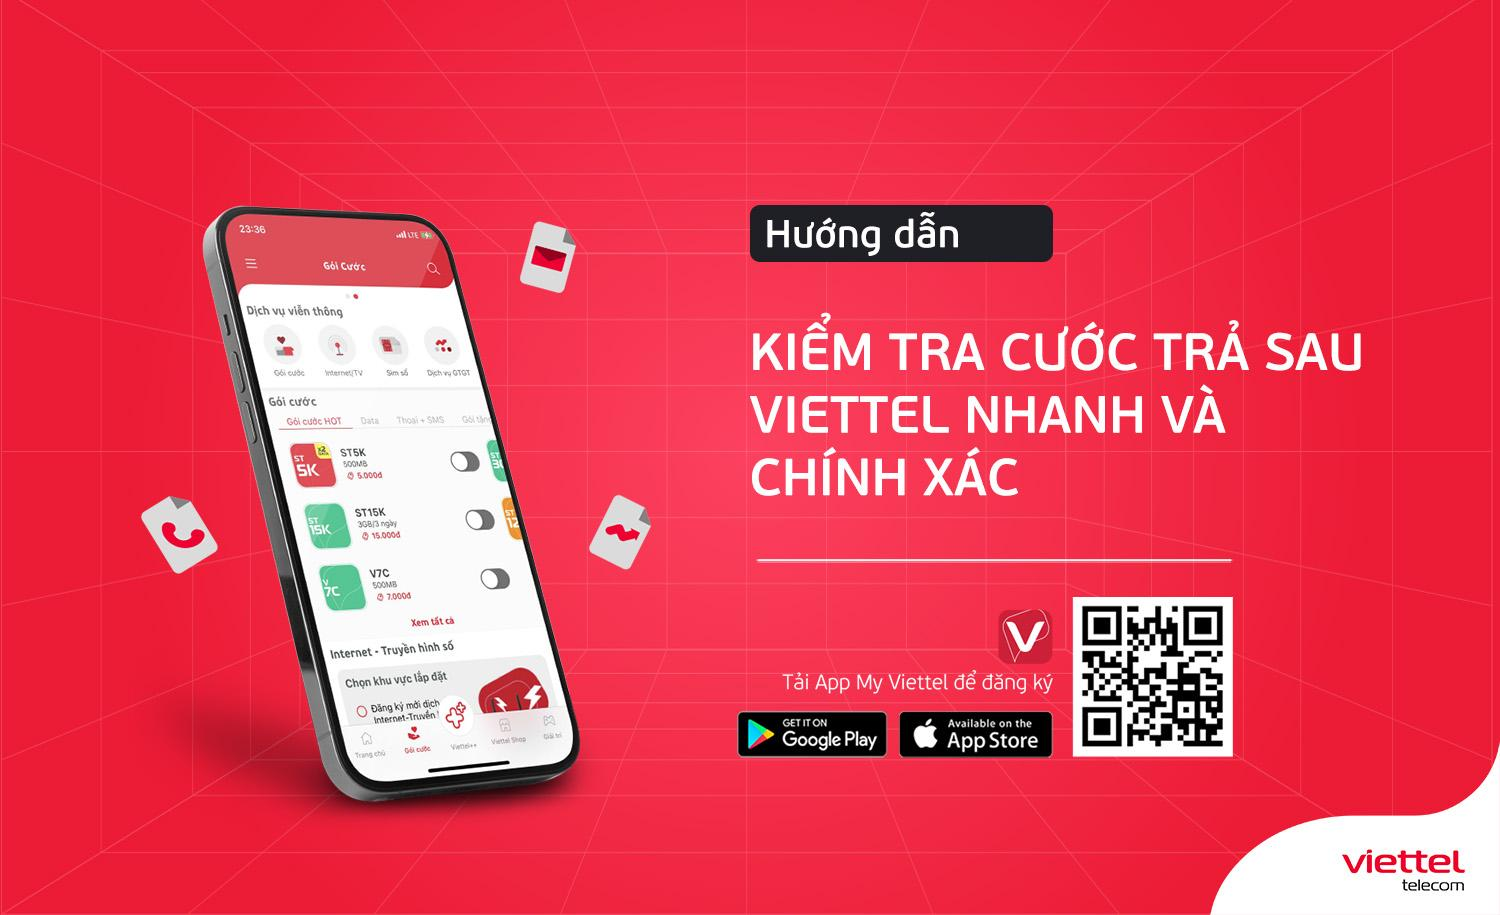 Viettel Telecom là một trong những nhà cung cấp dịch vụ viễn thông hàng đầu tại Việt Nam, bạn có muốn tìm hiểu thêm về họ không? Hãy xem ảnh liên quan đến Viettel Telecom của chúng tôi để biết thêm chi tiết.